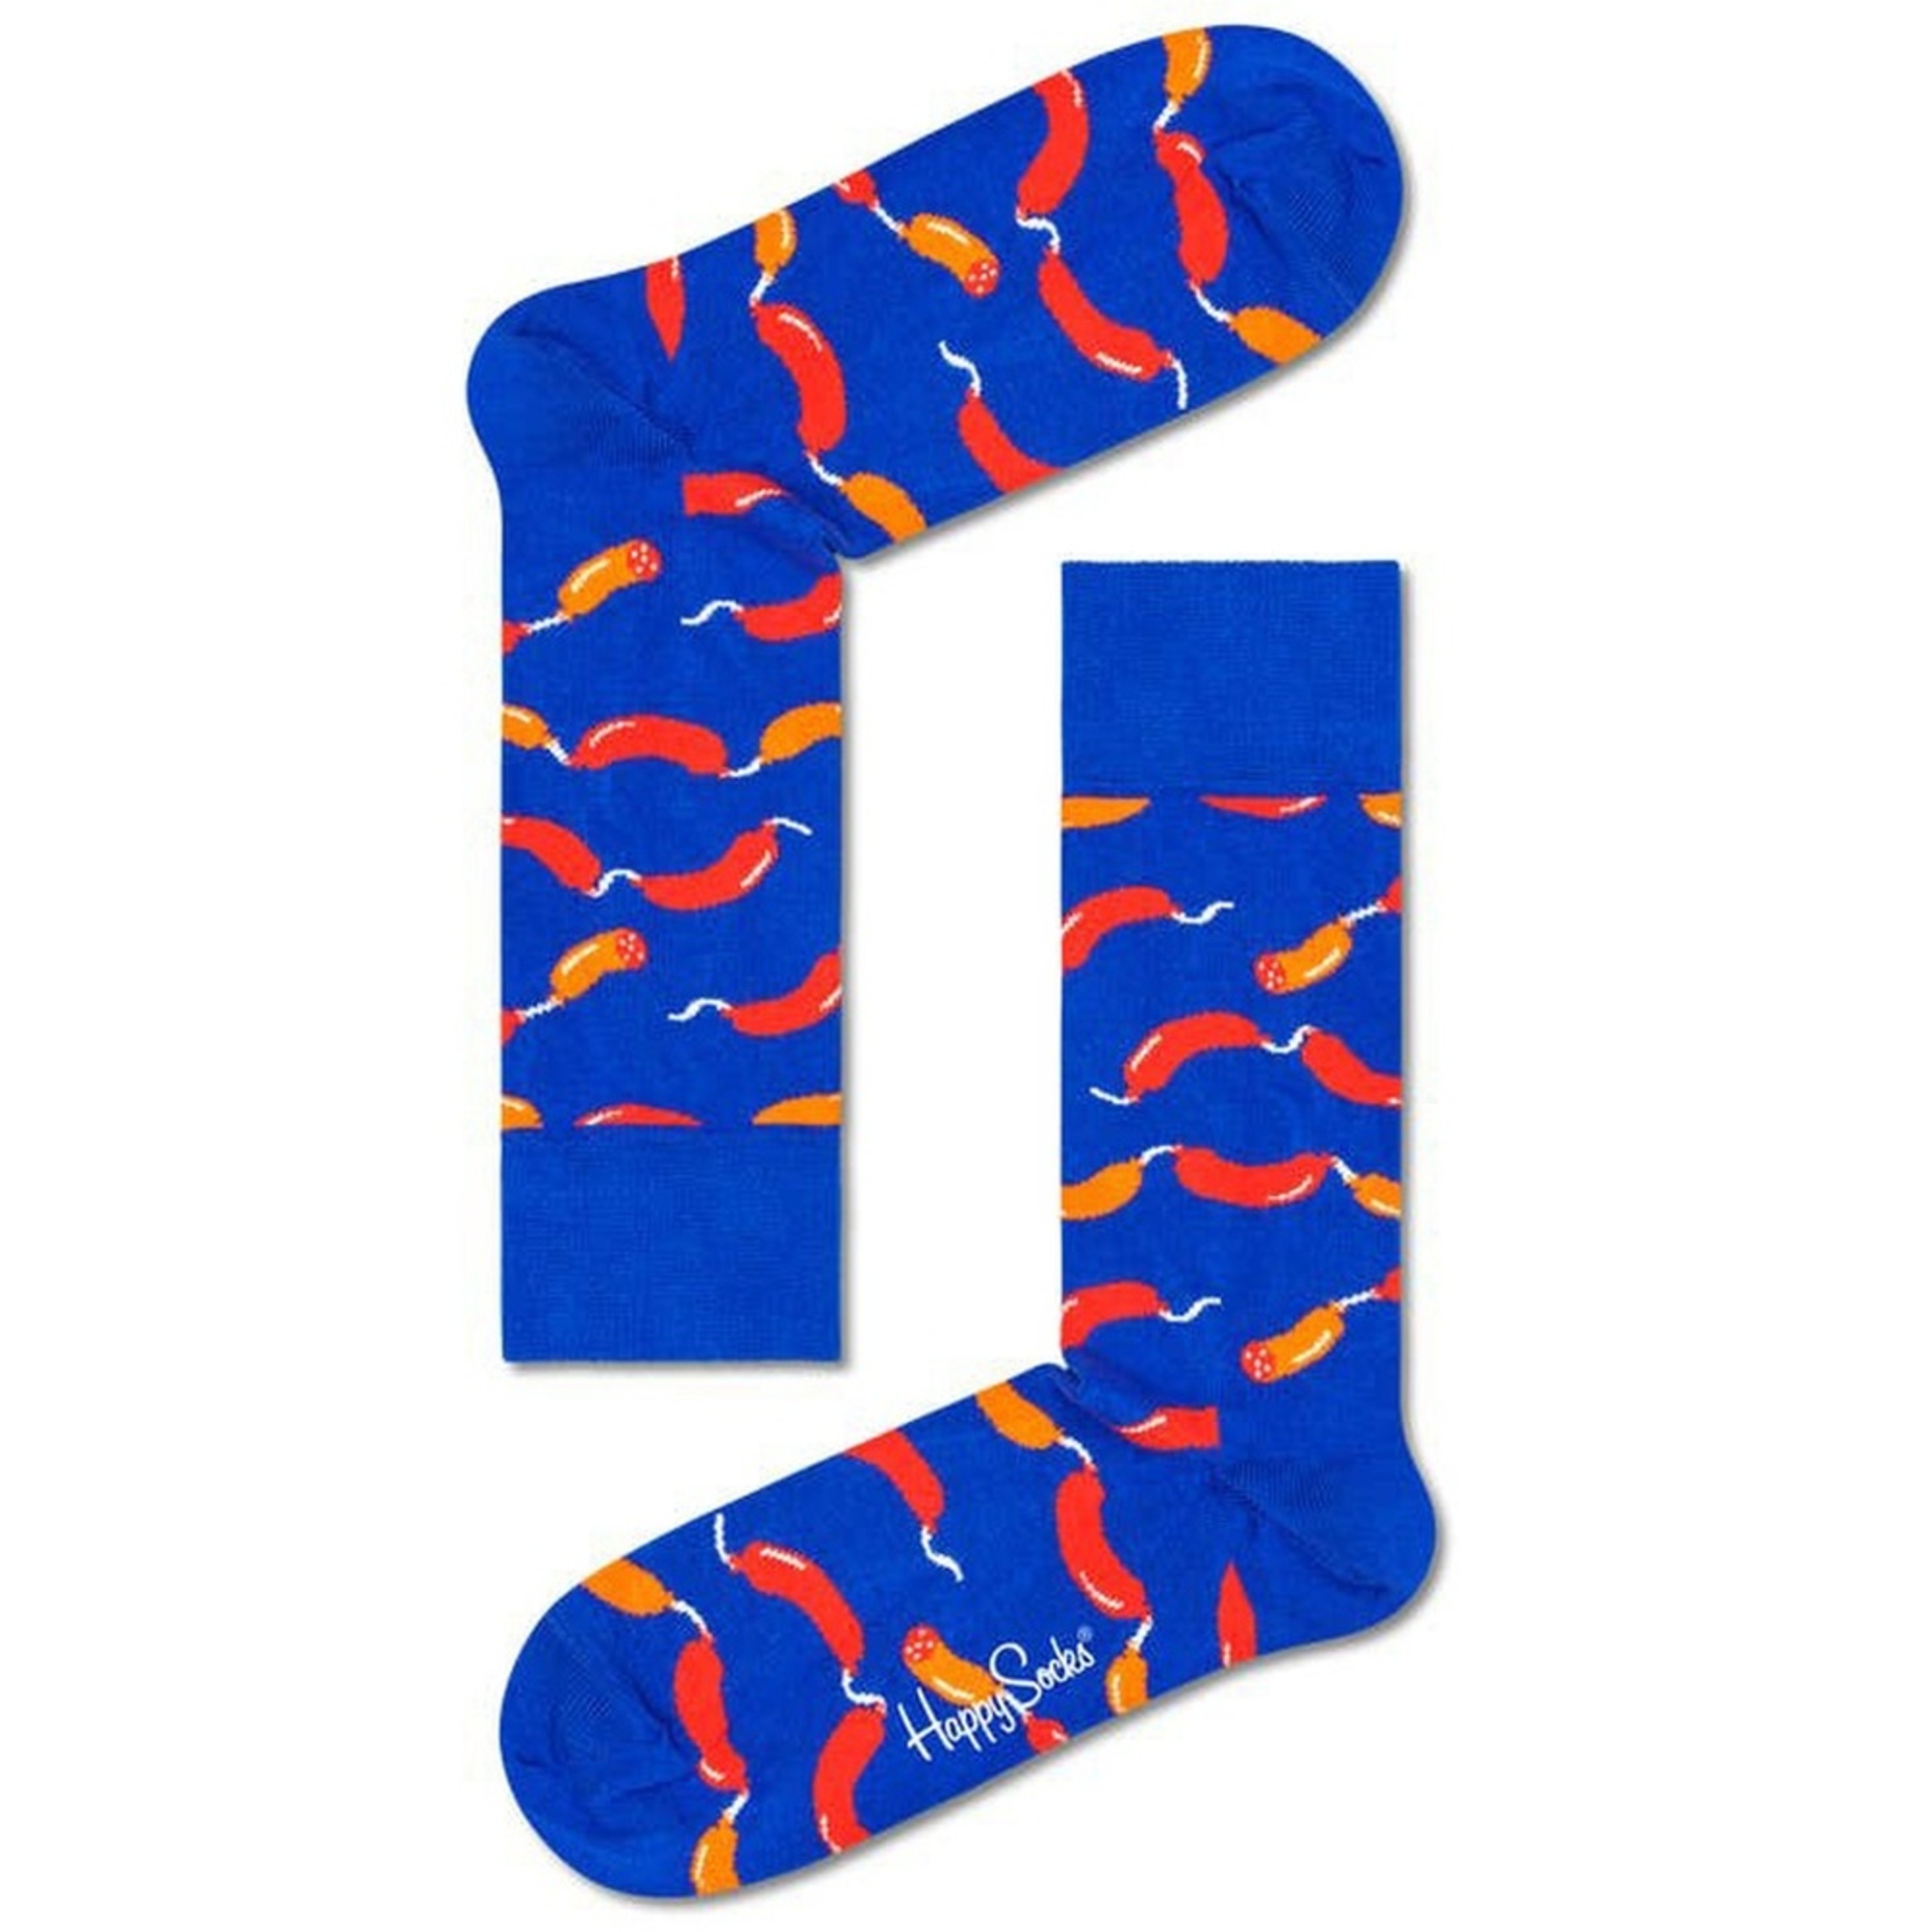 Par De Calcetines Happy Socks Salchichas - multicolor - 